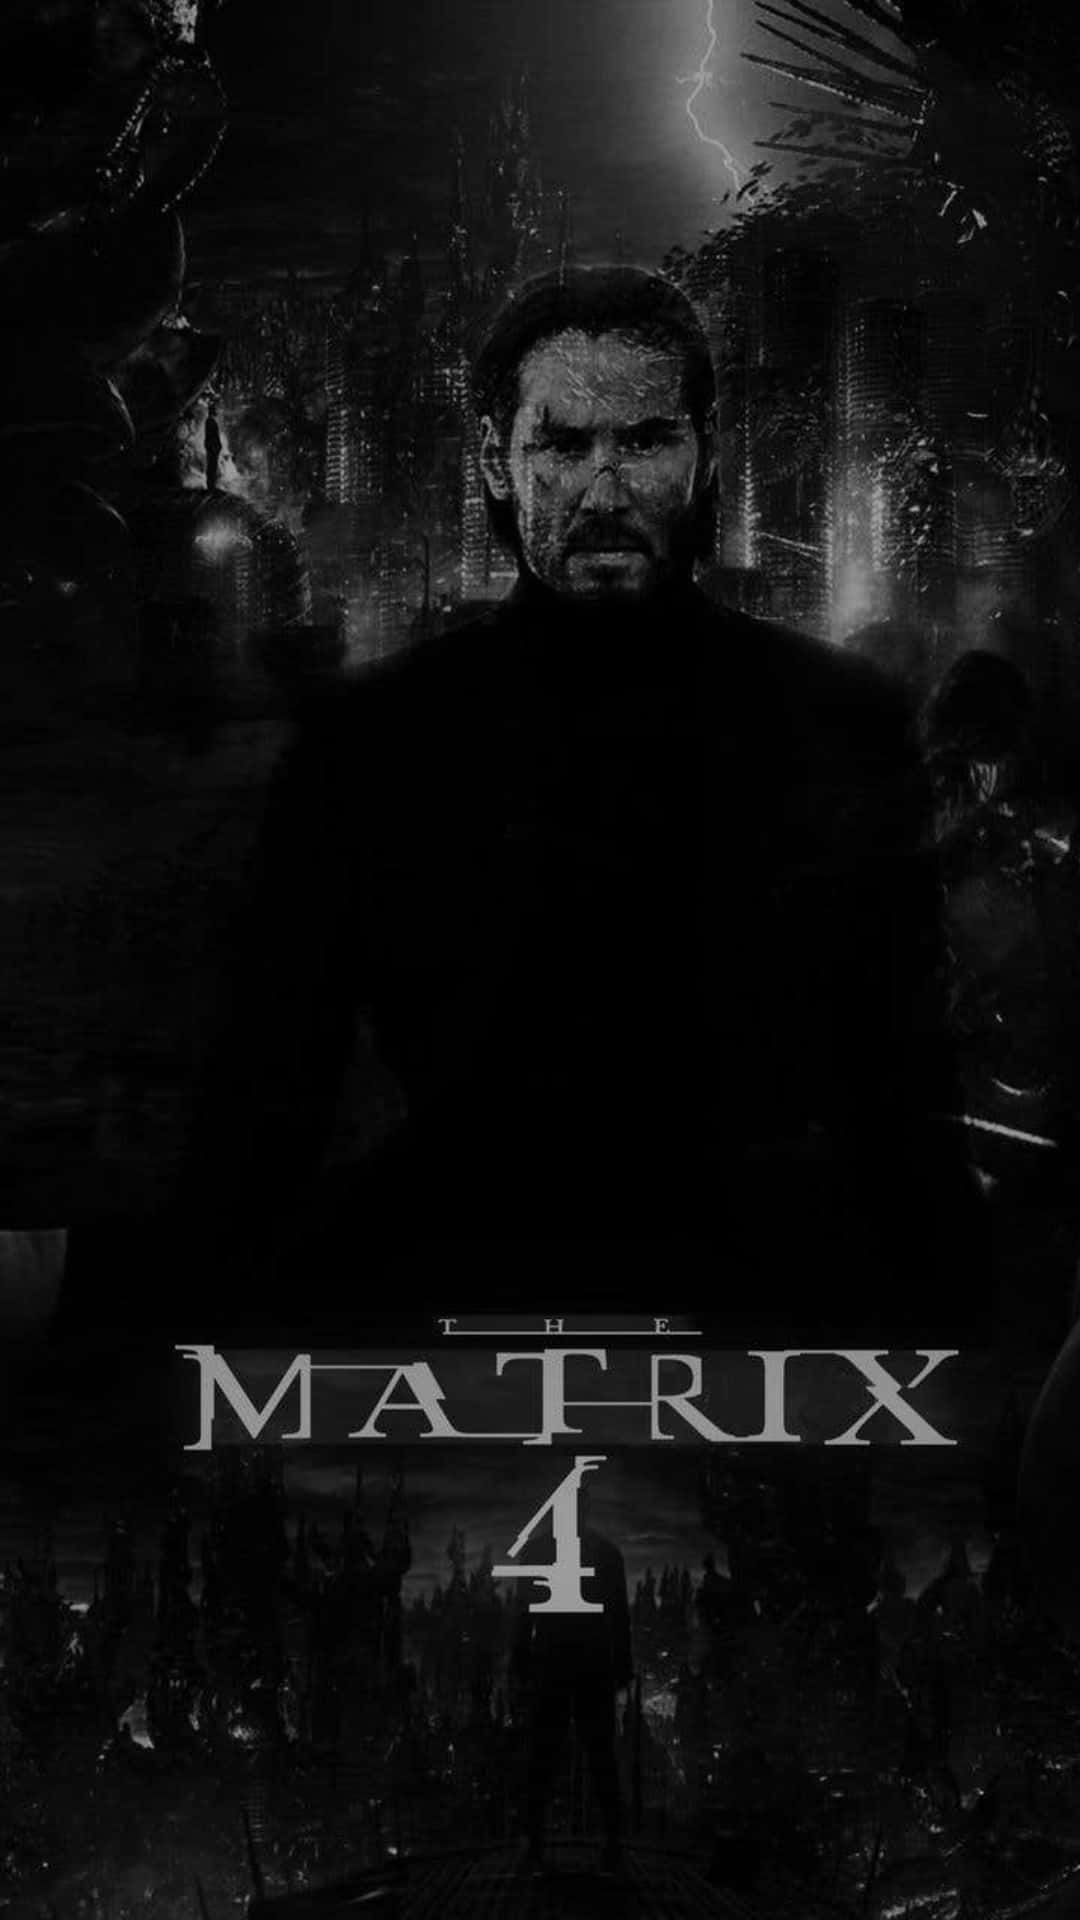 Ilposter Di Matrix 4 Con Un Uomo Di Fronte A Una Città Sfondo